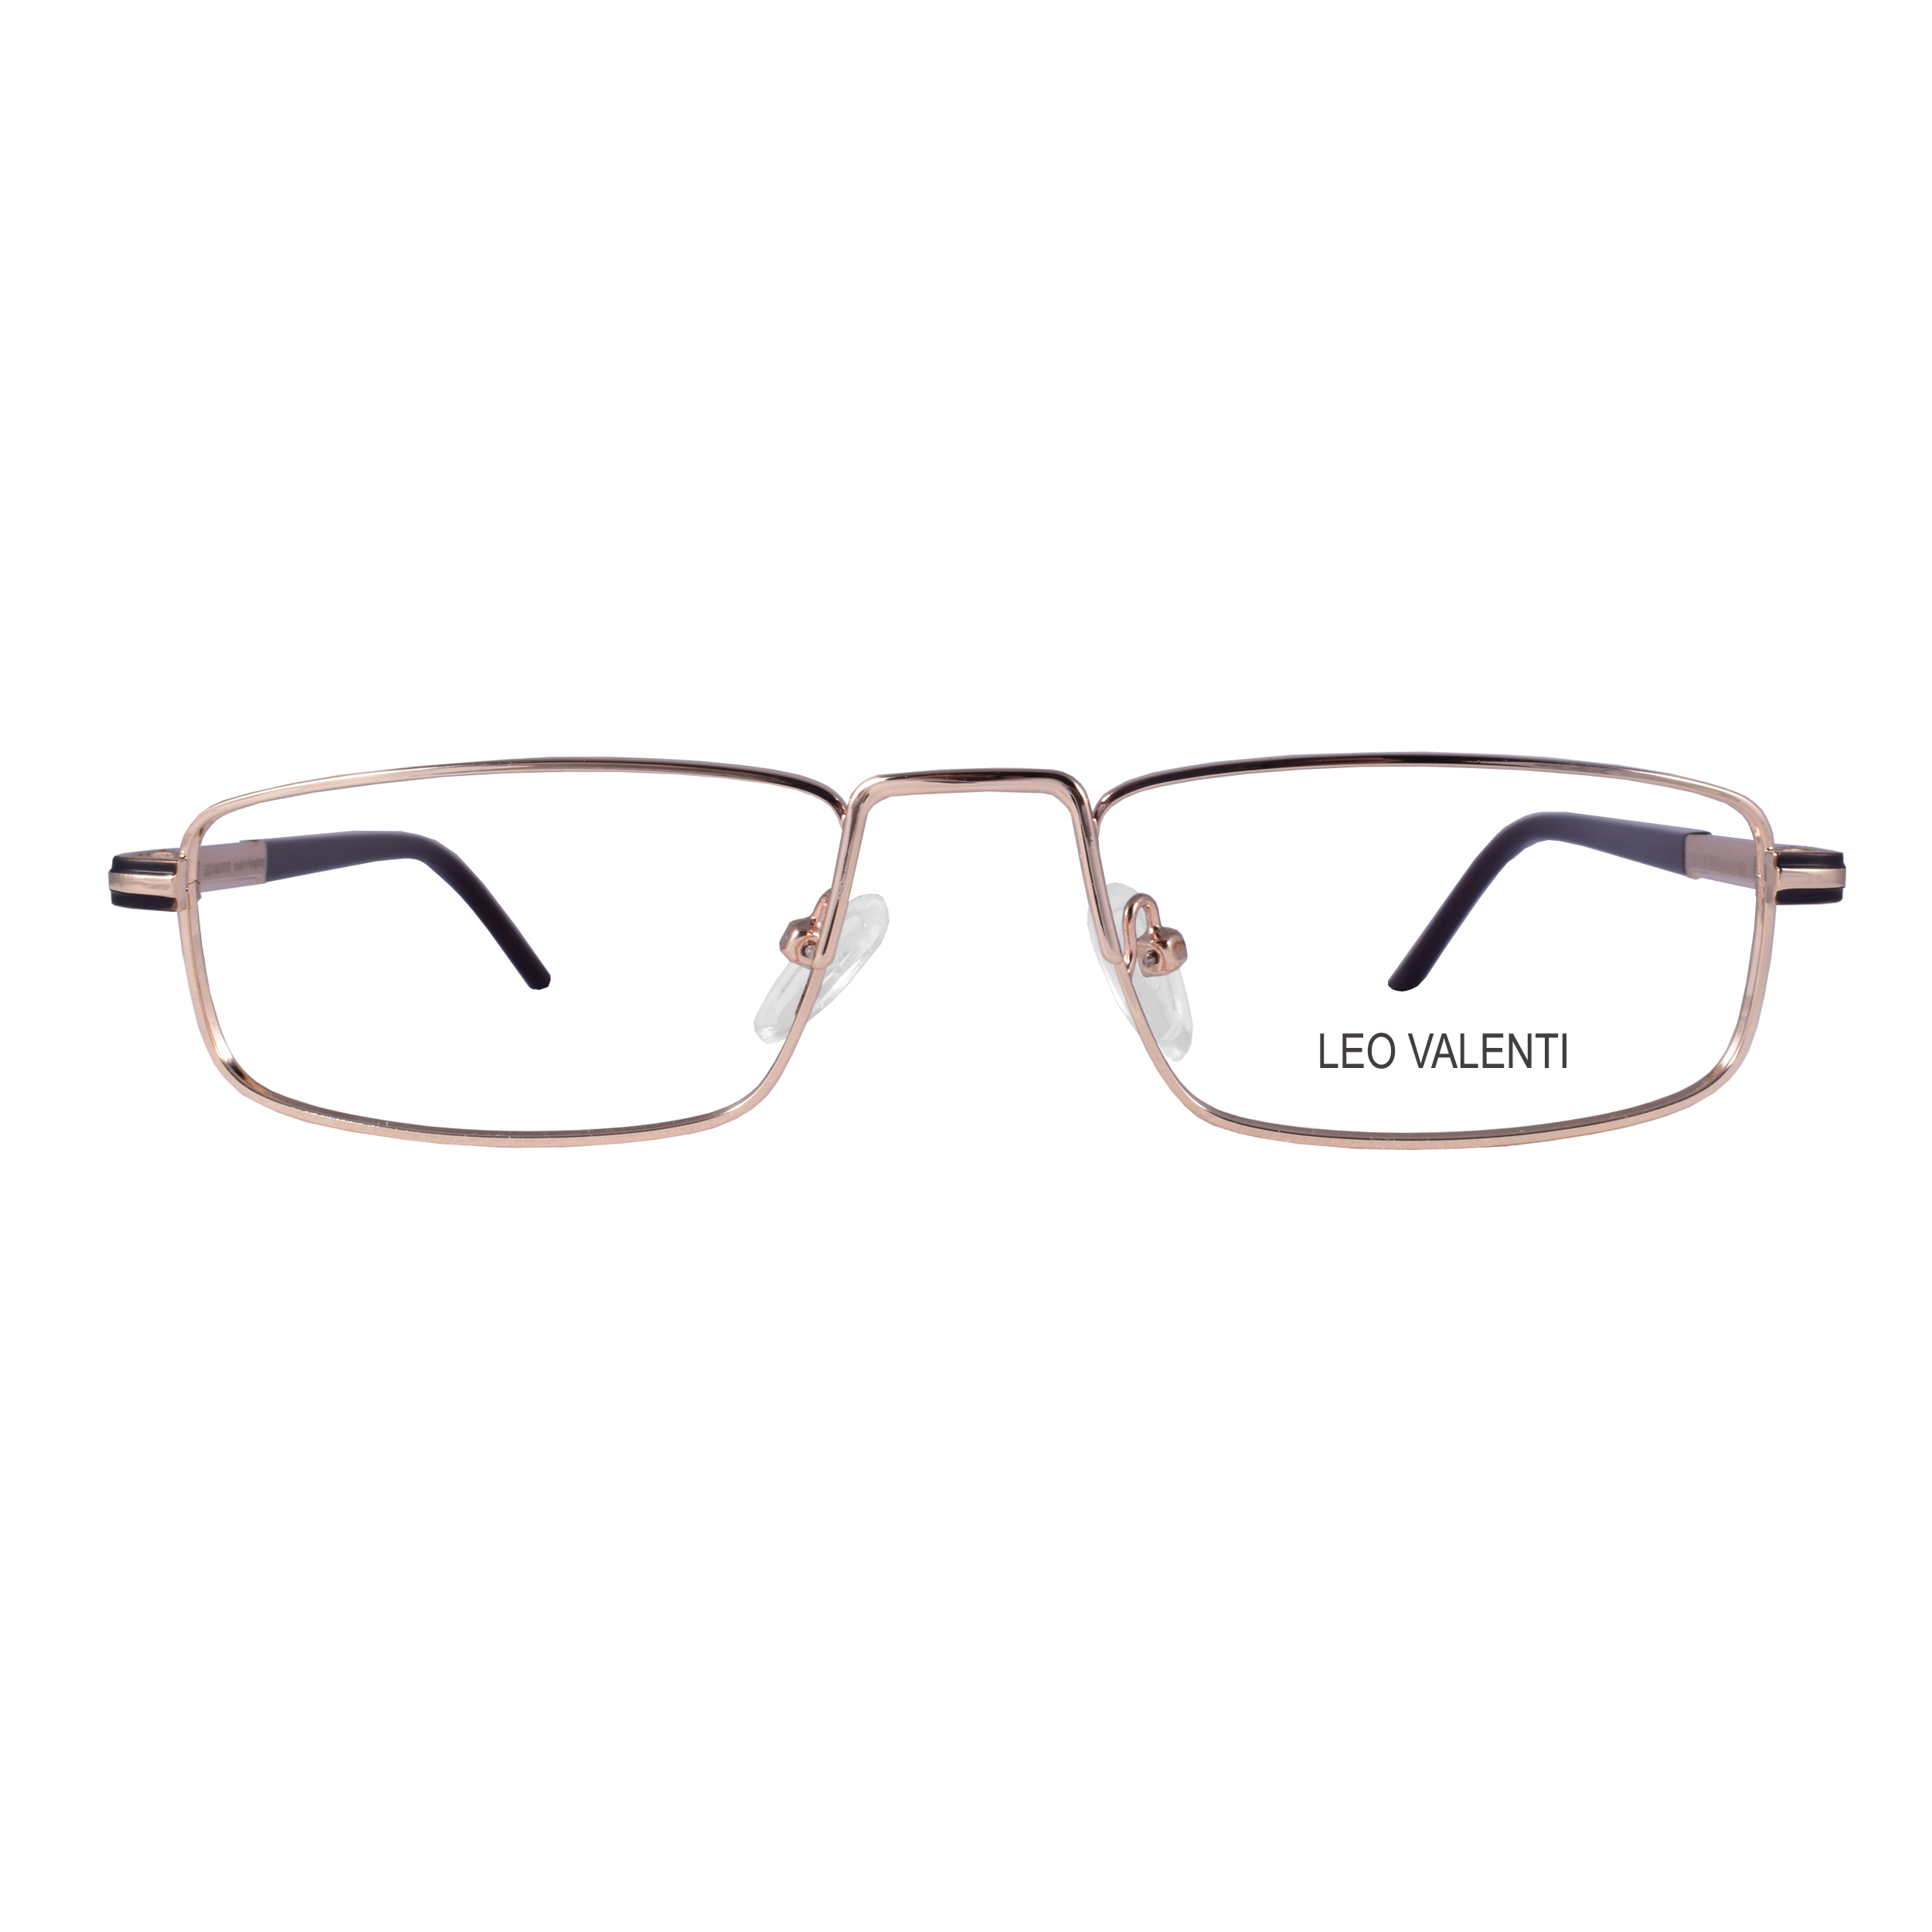 فریم عینک طبی لئو ولنتی مدل LV485 51-18-140 1B